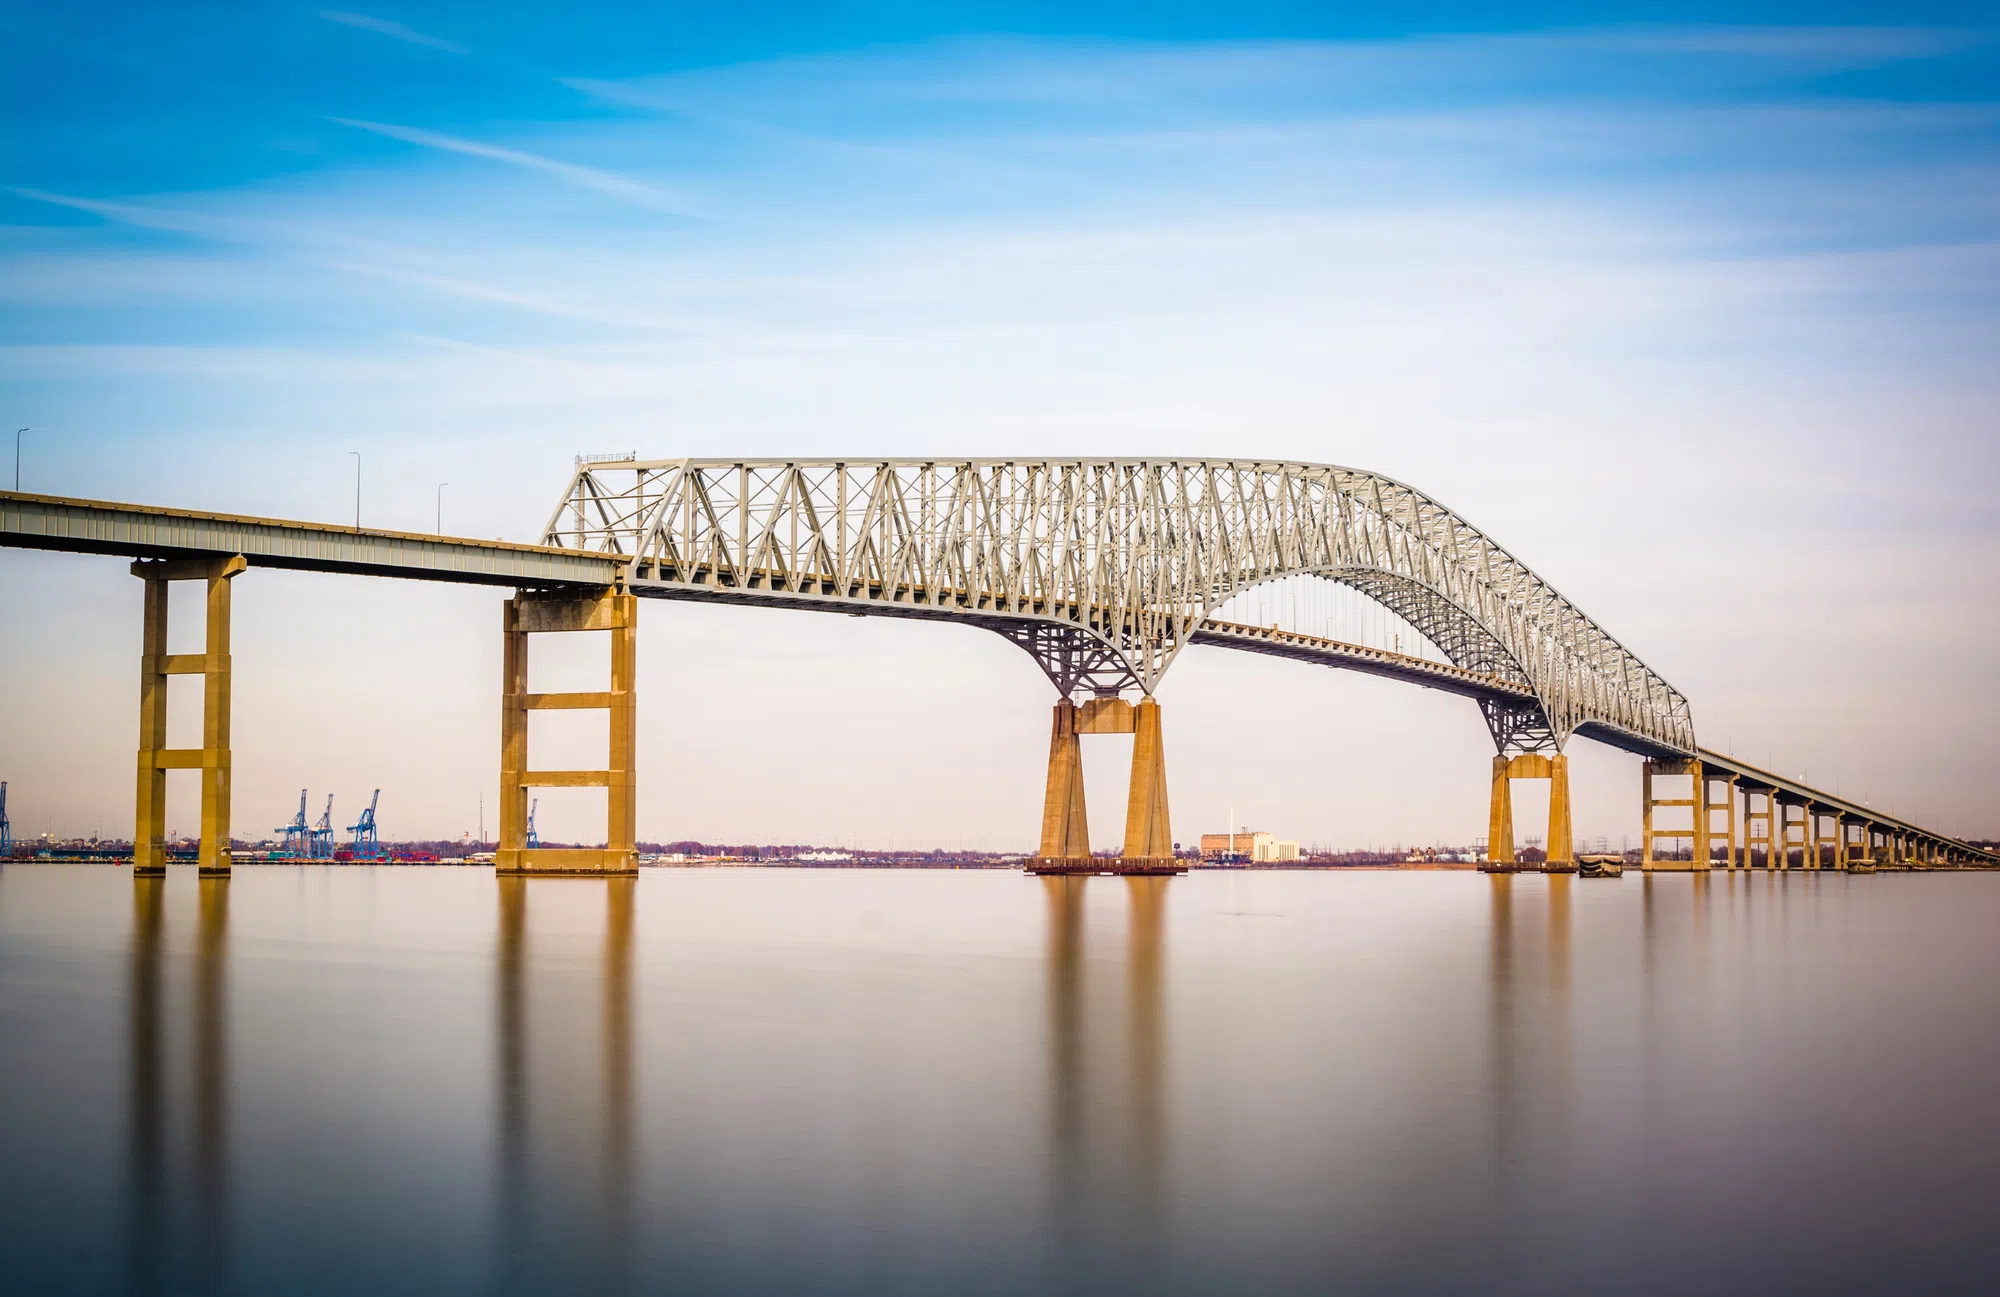 Could what happen in Baltimore happen to bridges in Louisiana?